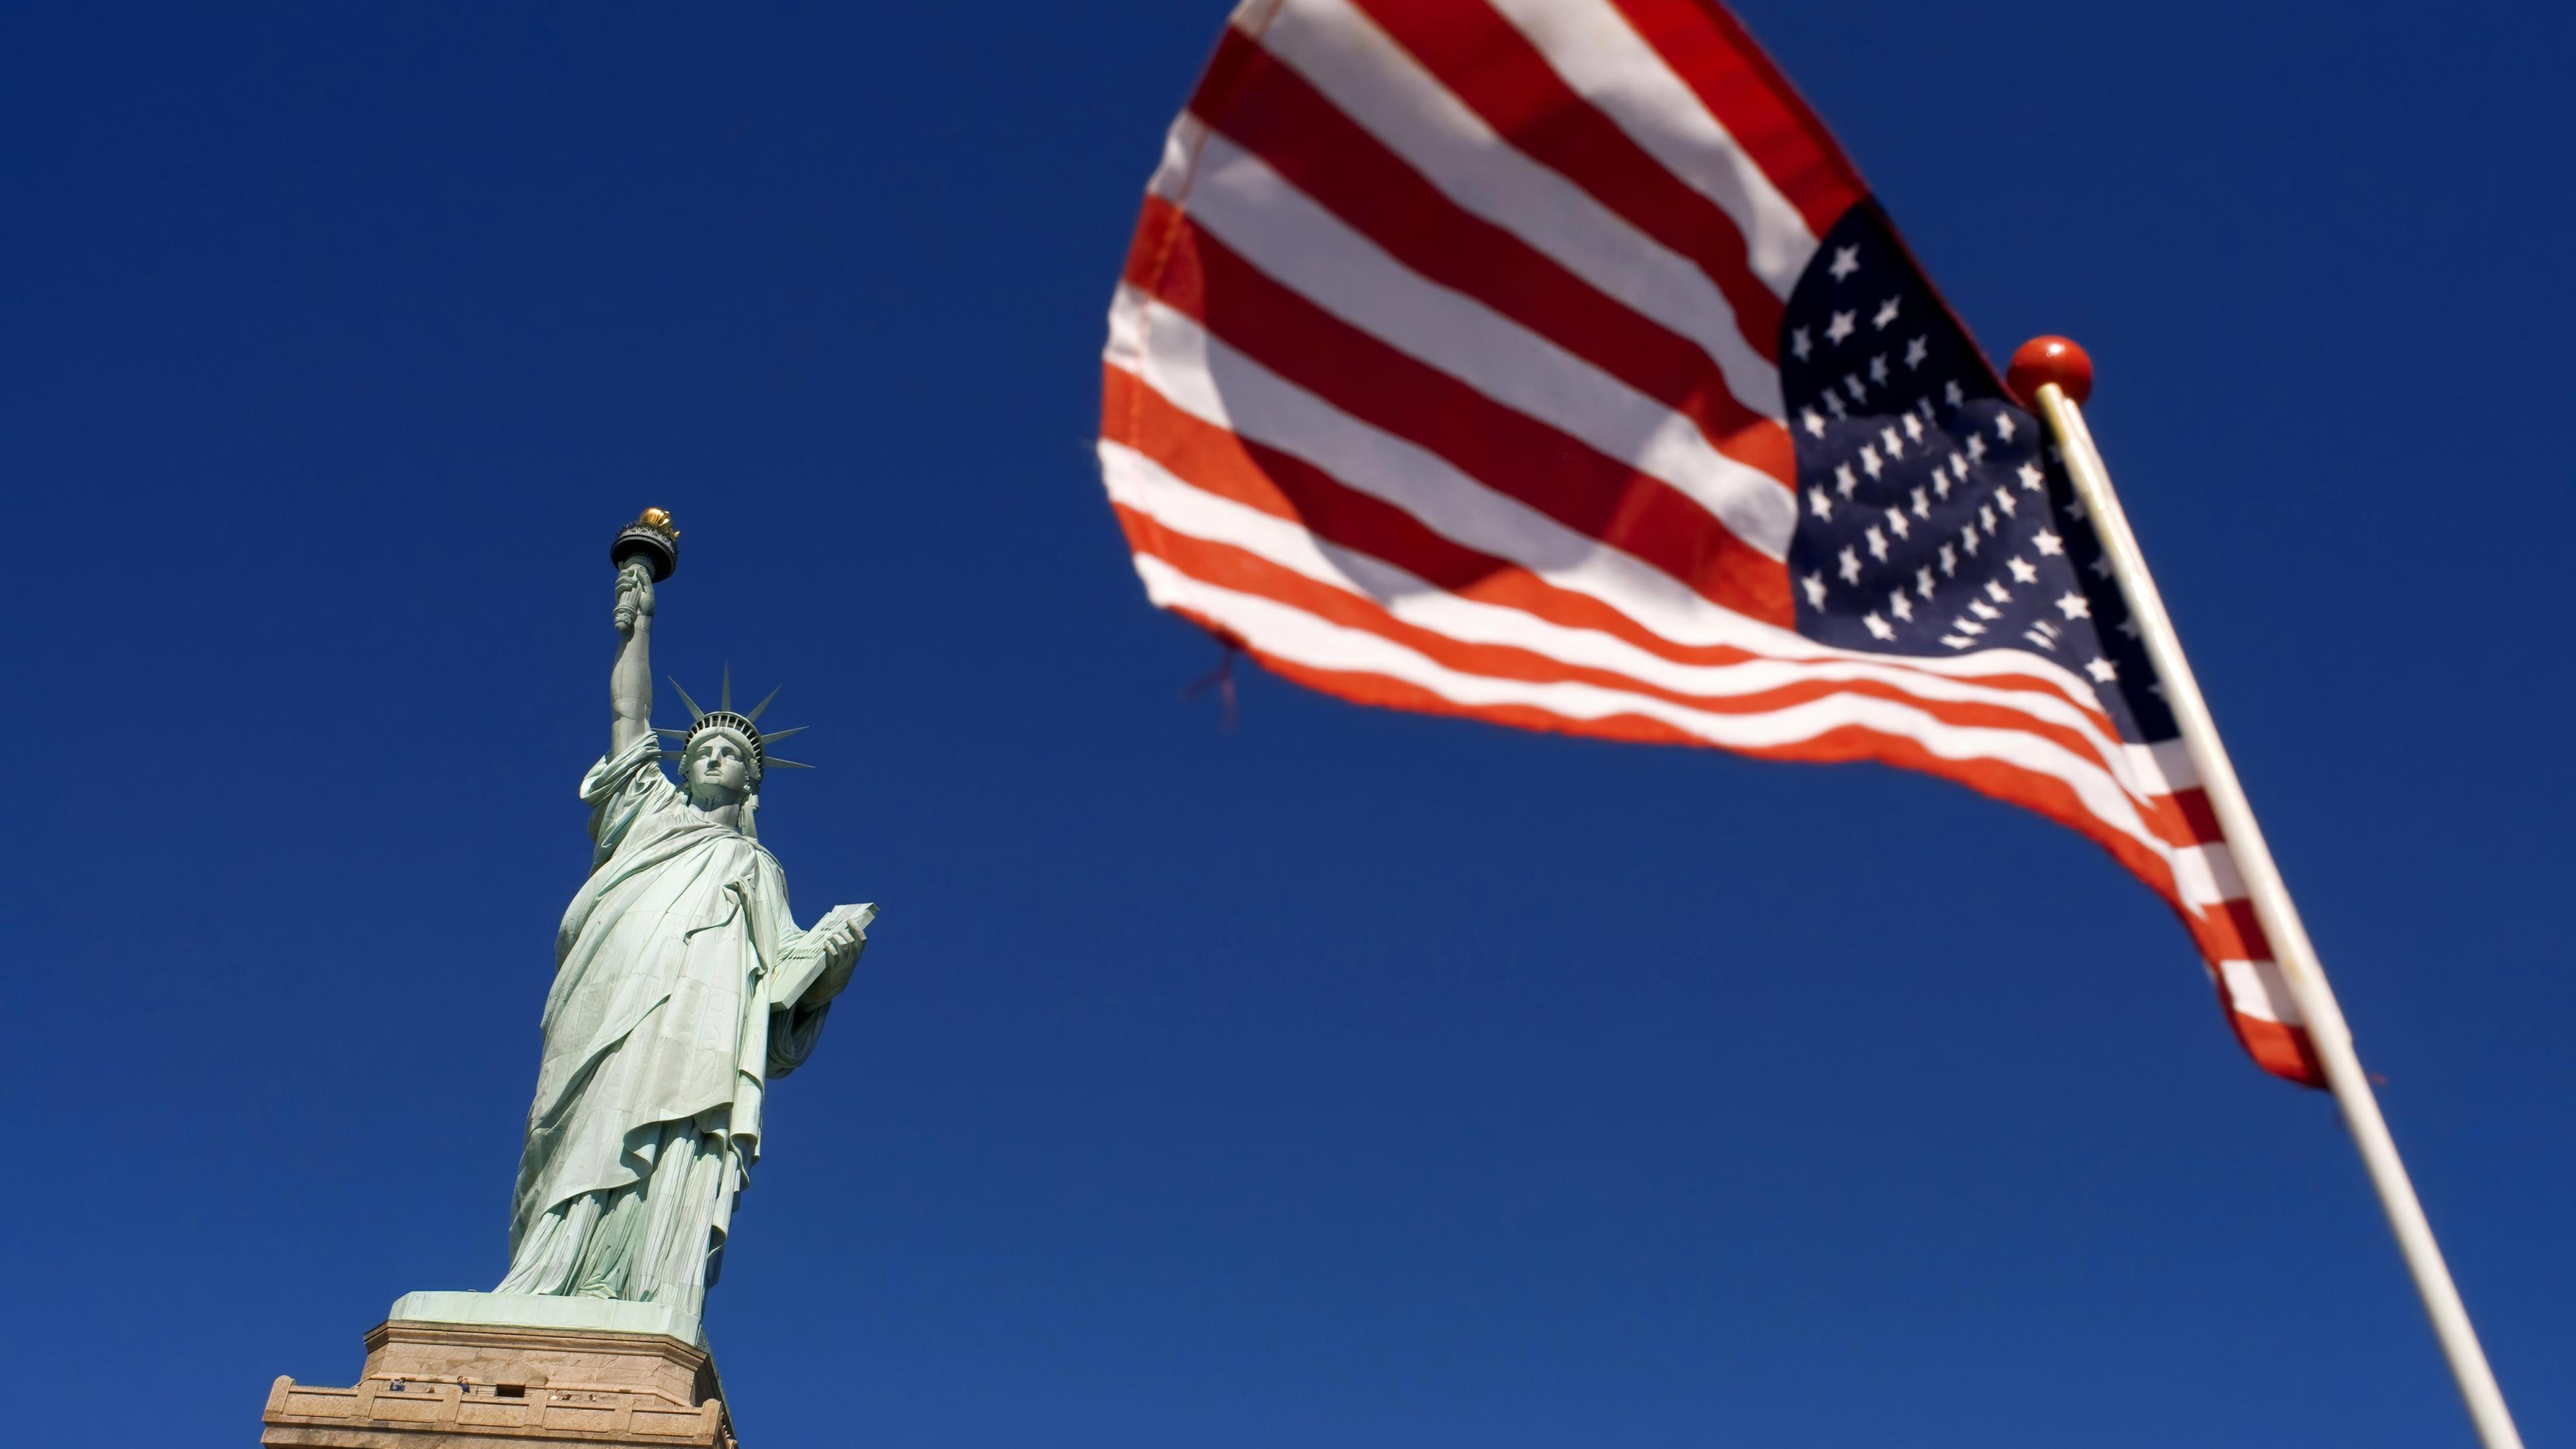 Untersicht auf eine Freiheitsstatue - eine Frau mit Sternenkrone, die eine Fackel hochhält. Daneben flattert eine US-Flagge vor blauem Himmel.